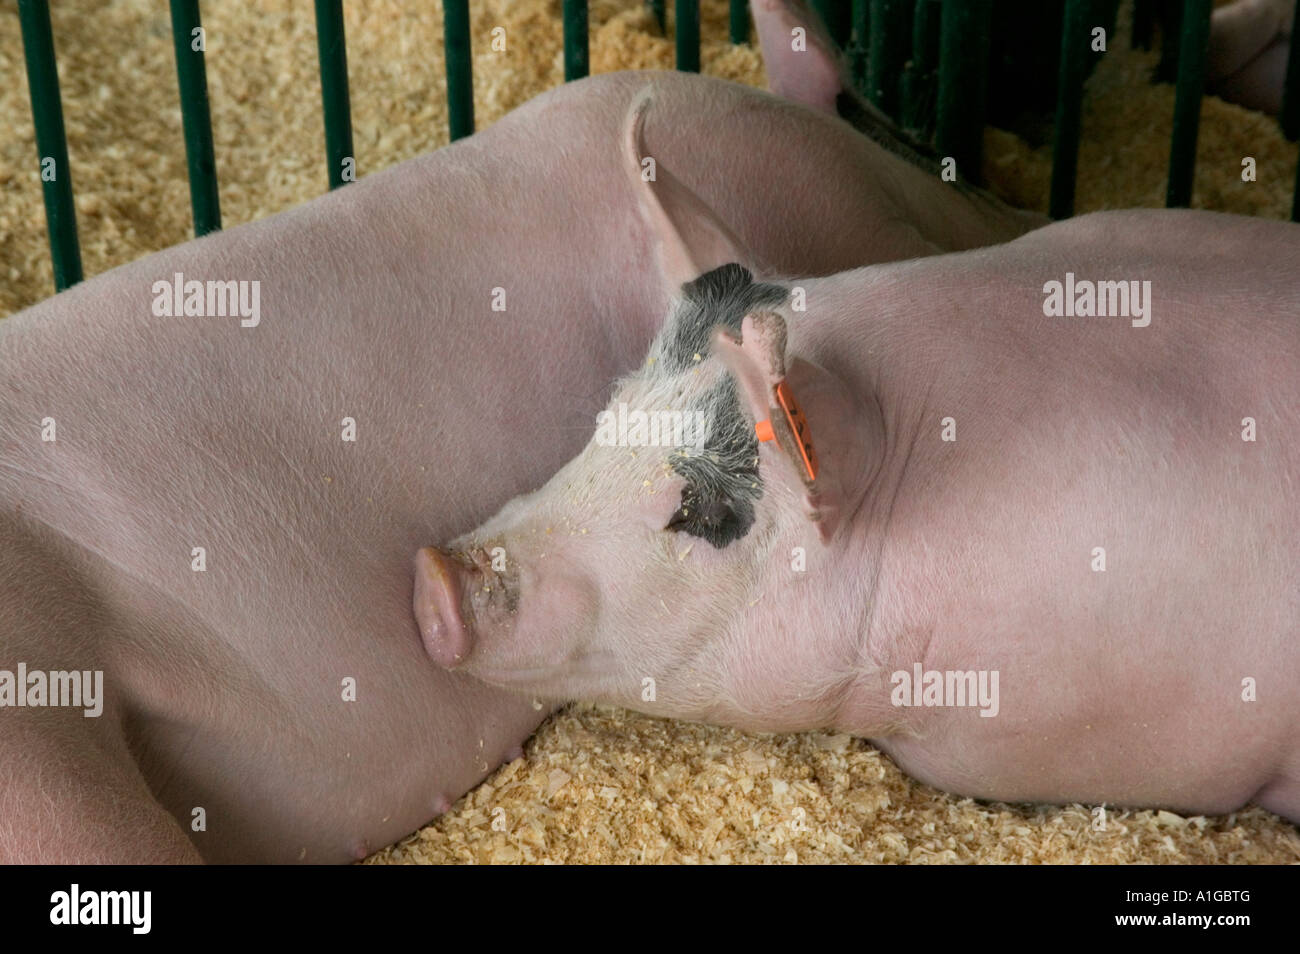 Two hogs taking a break, Stock Photo